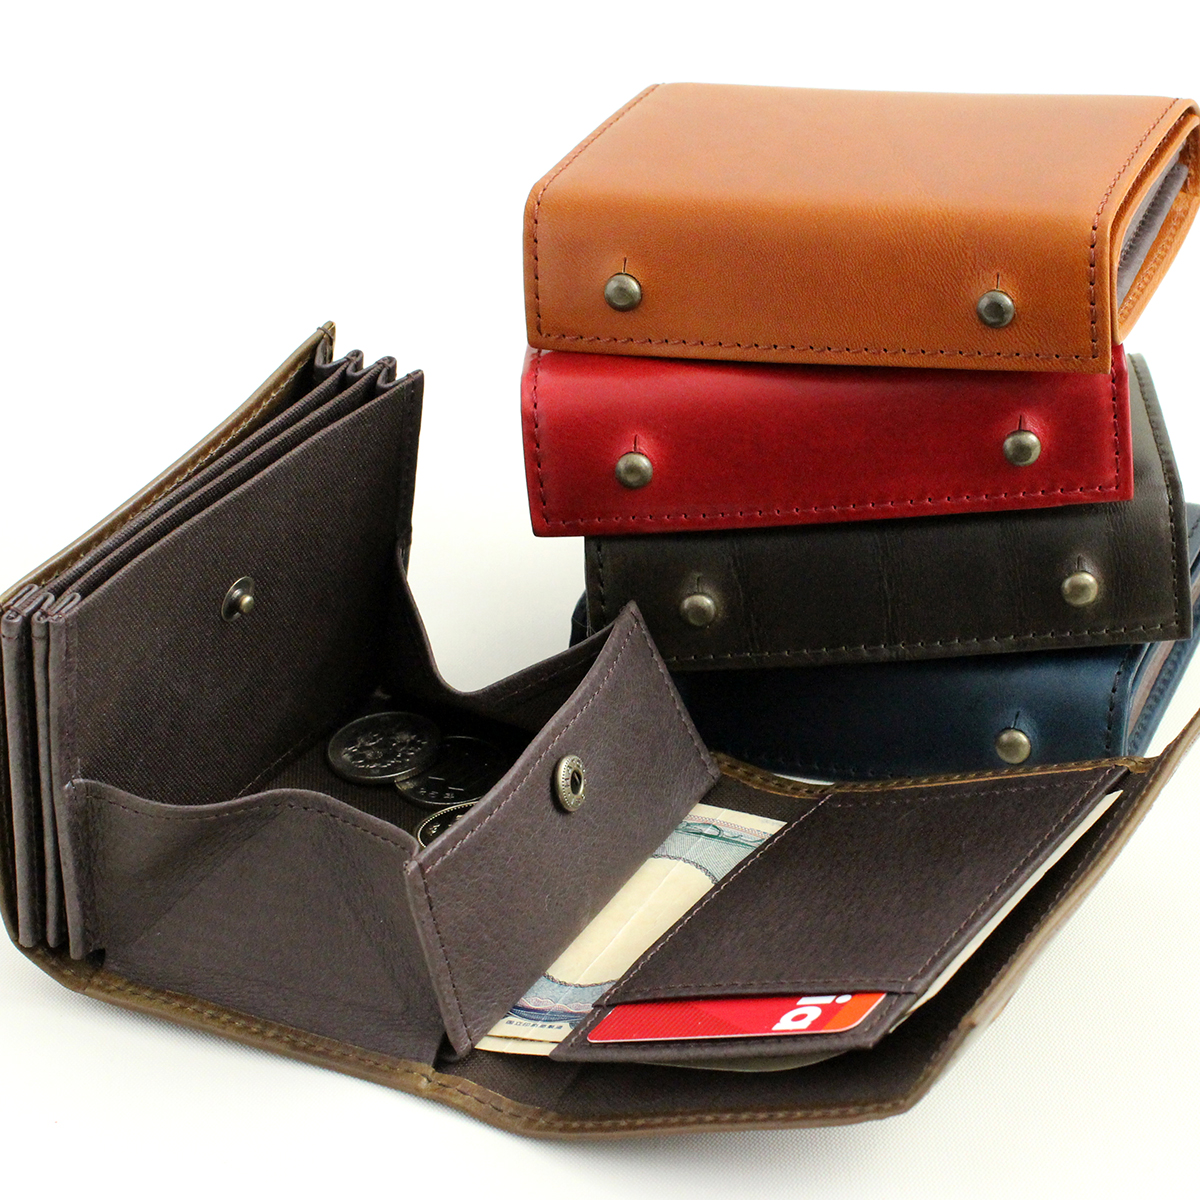 エムピウ,ミッレフォリエ,コンパクト財布,おしゃれ,ミニ財布,おしゃれな財布,おすすめ,おすすめの財布,2021年の財布